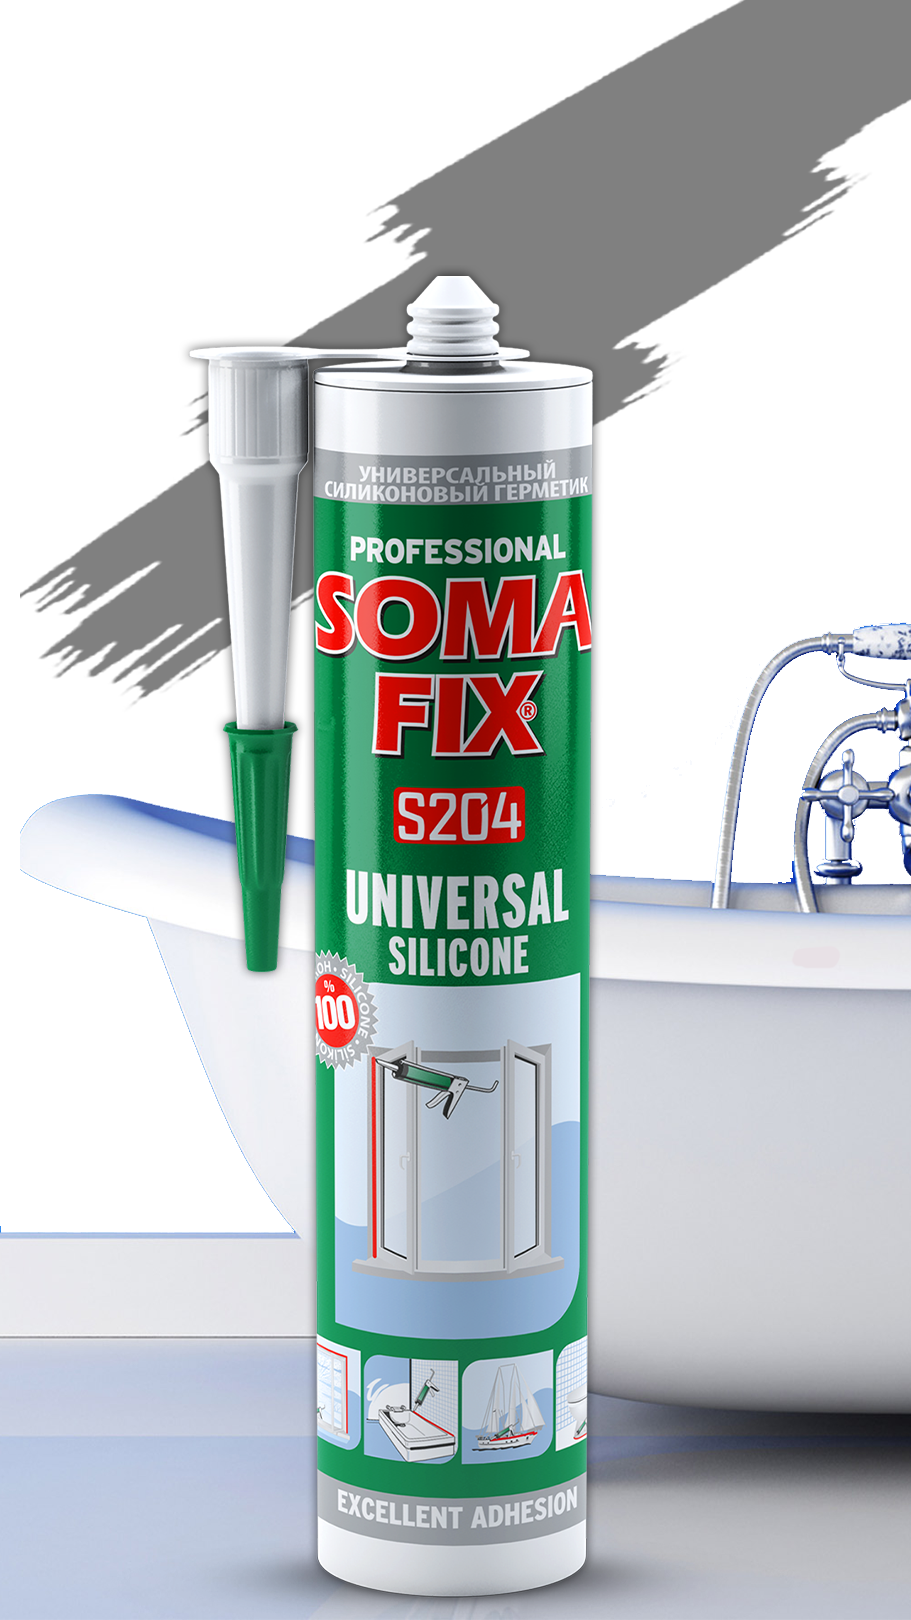 Силиконовый герметик SOMA FIX универсальный 280 мл., серый S204. Купить от производителя по отличной цене